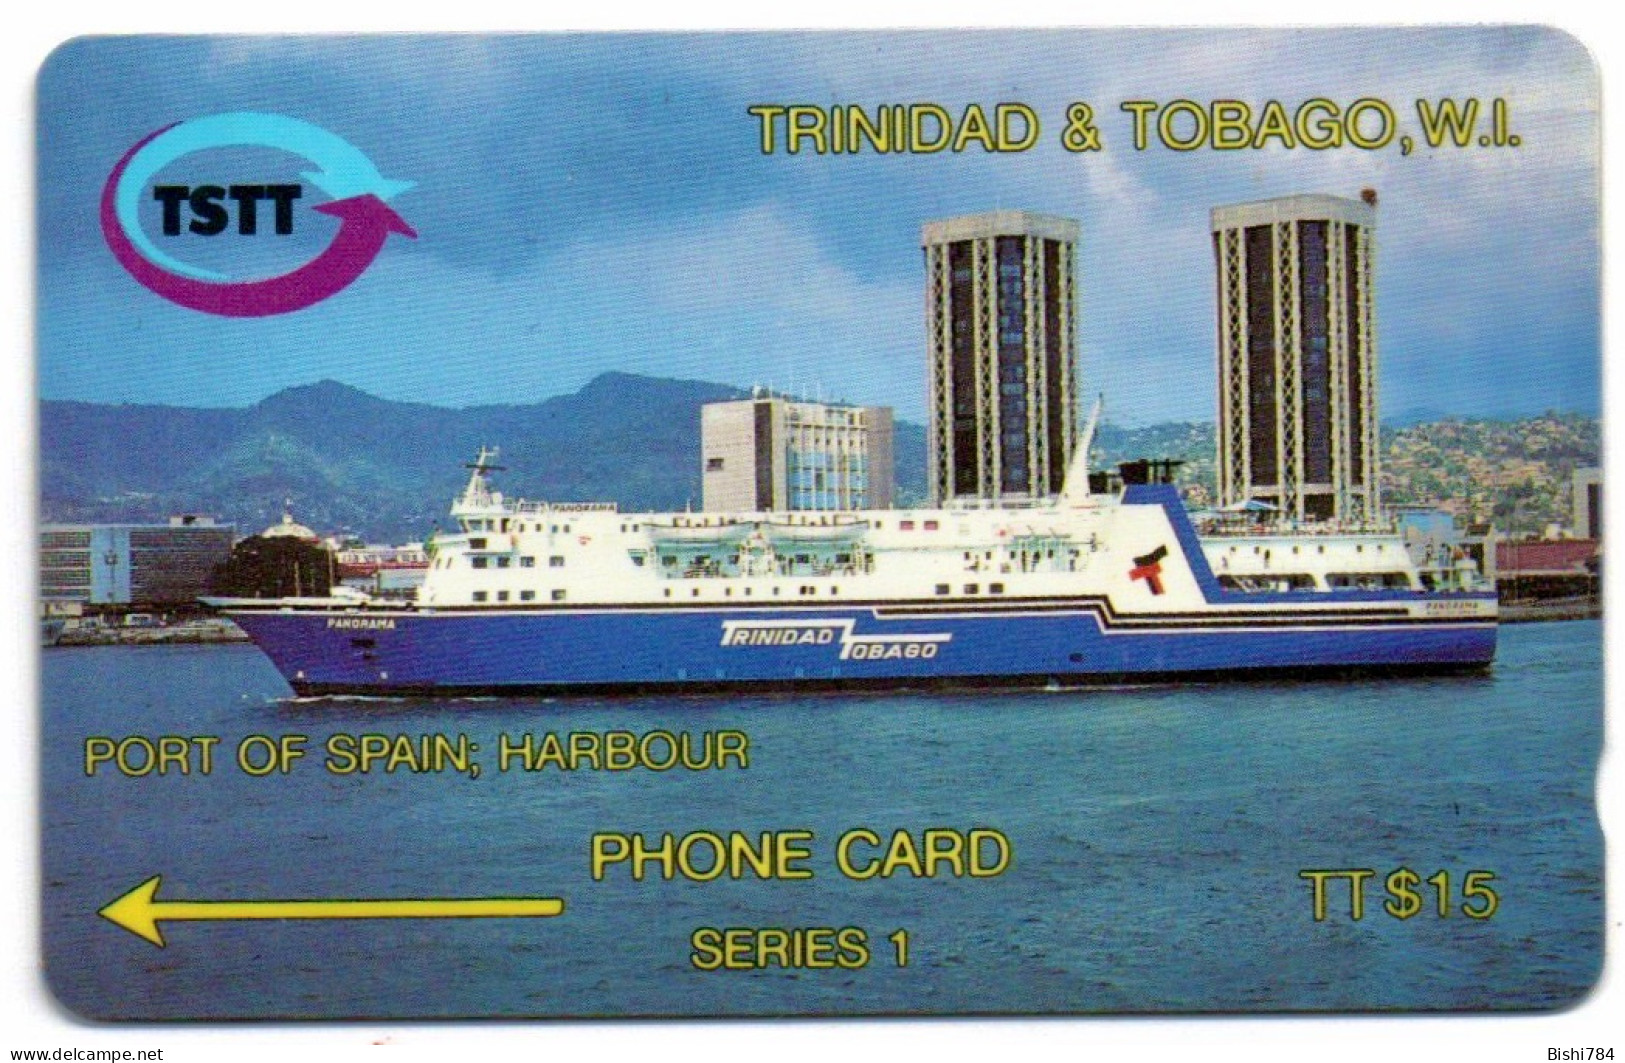 Trinidad & Tobago - PORT OF SPAIN; HARBOUR - 3CTTA - Trinidad & Tobago